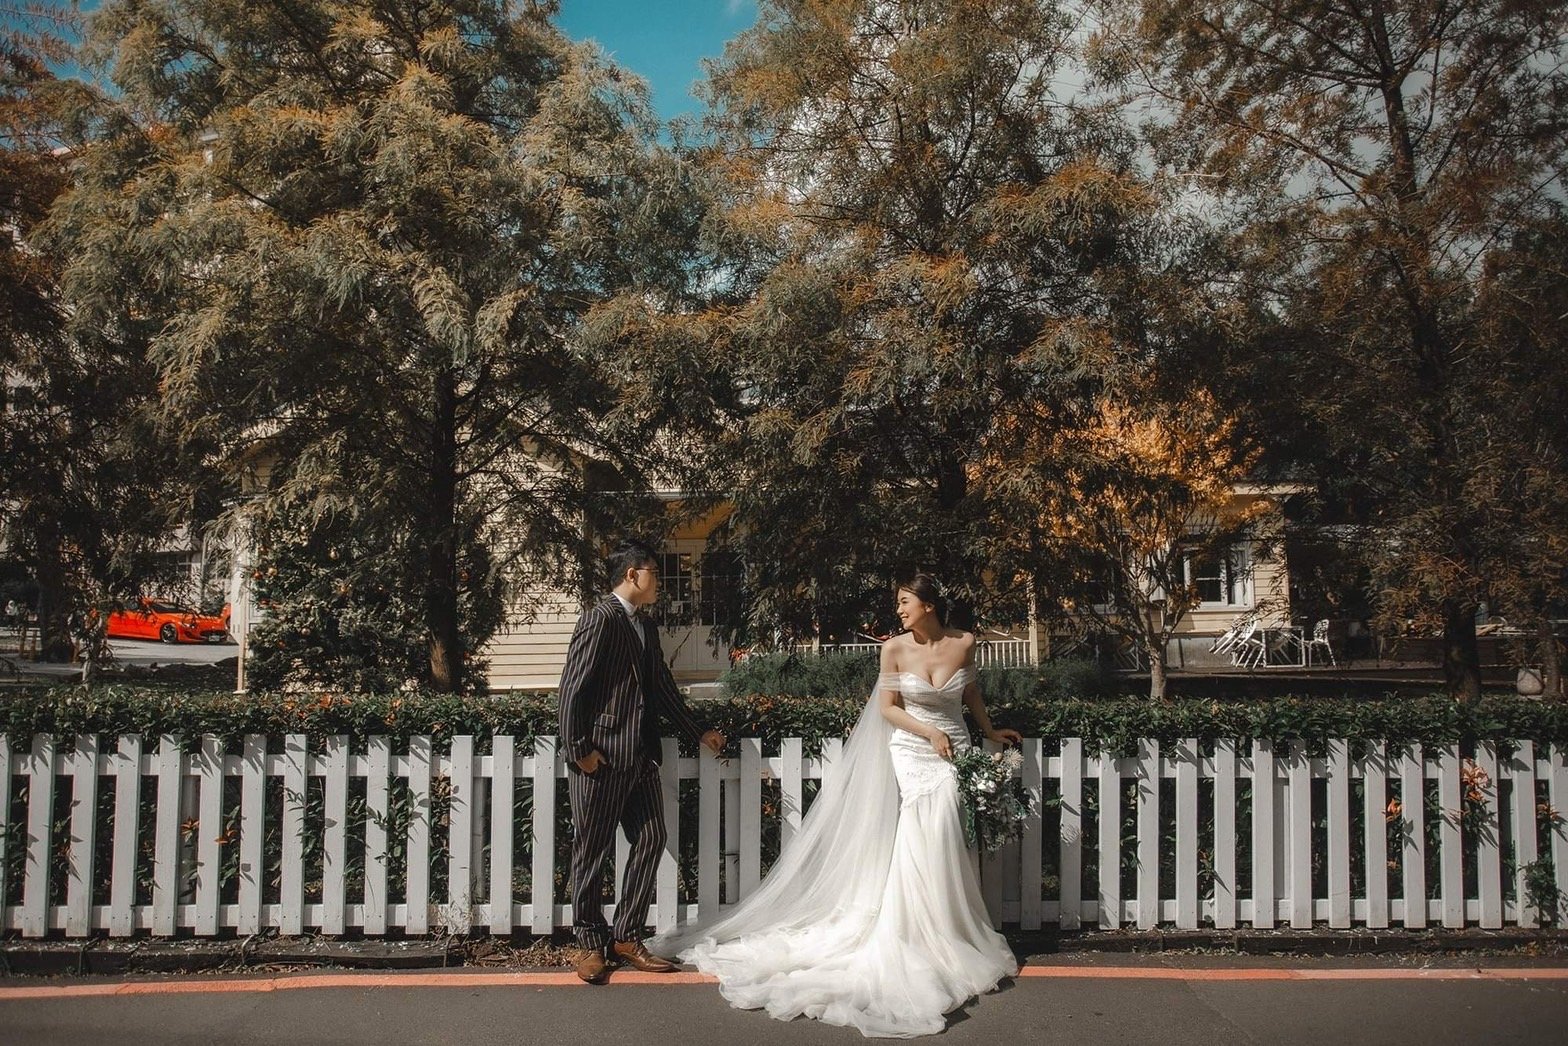 超棒攝影師～無壓力拍婚紗-結婚經驗分享